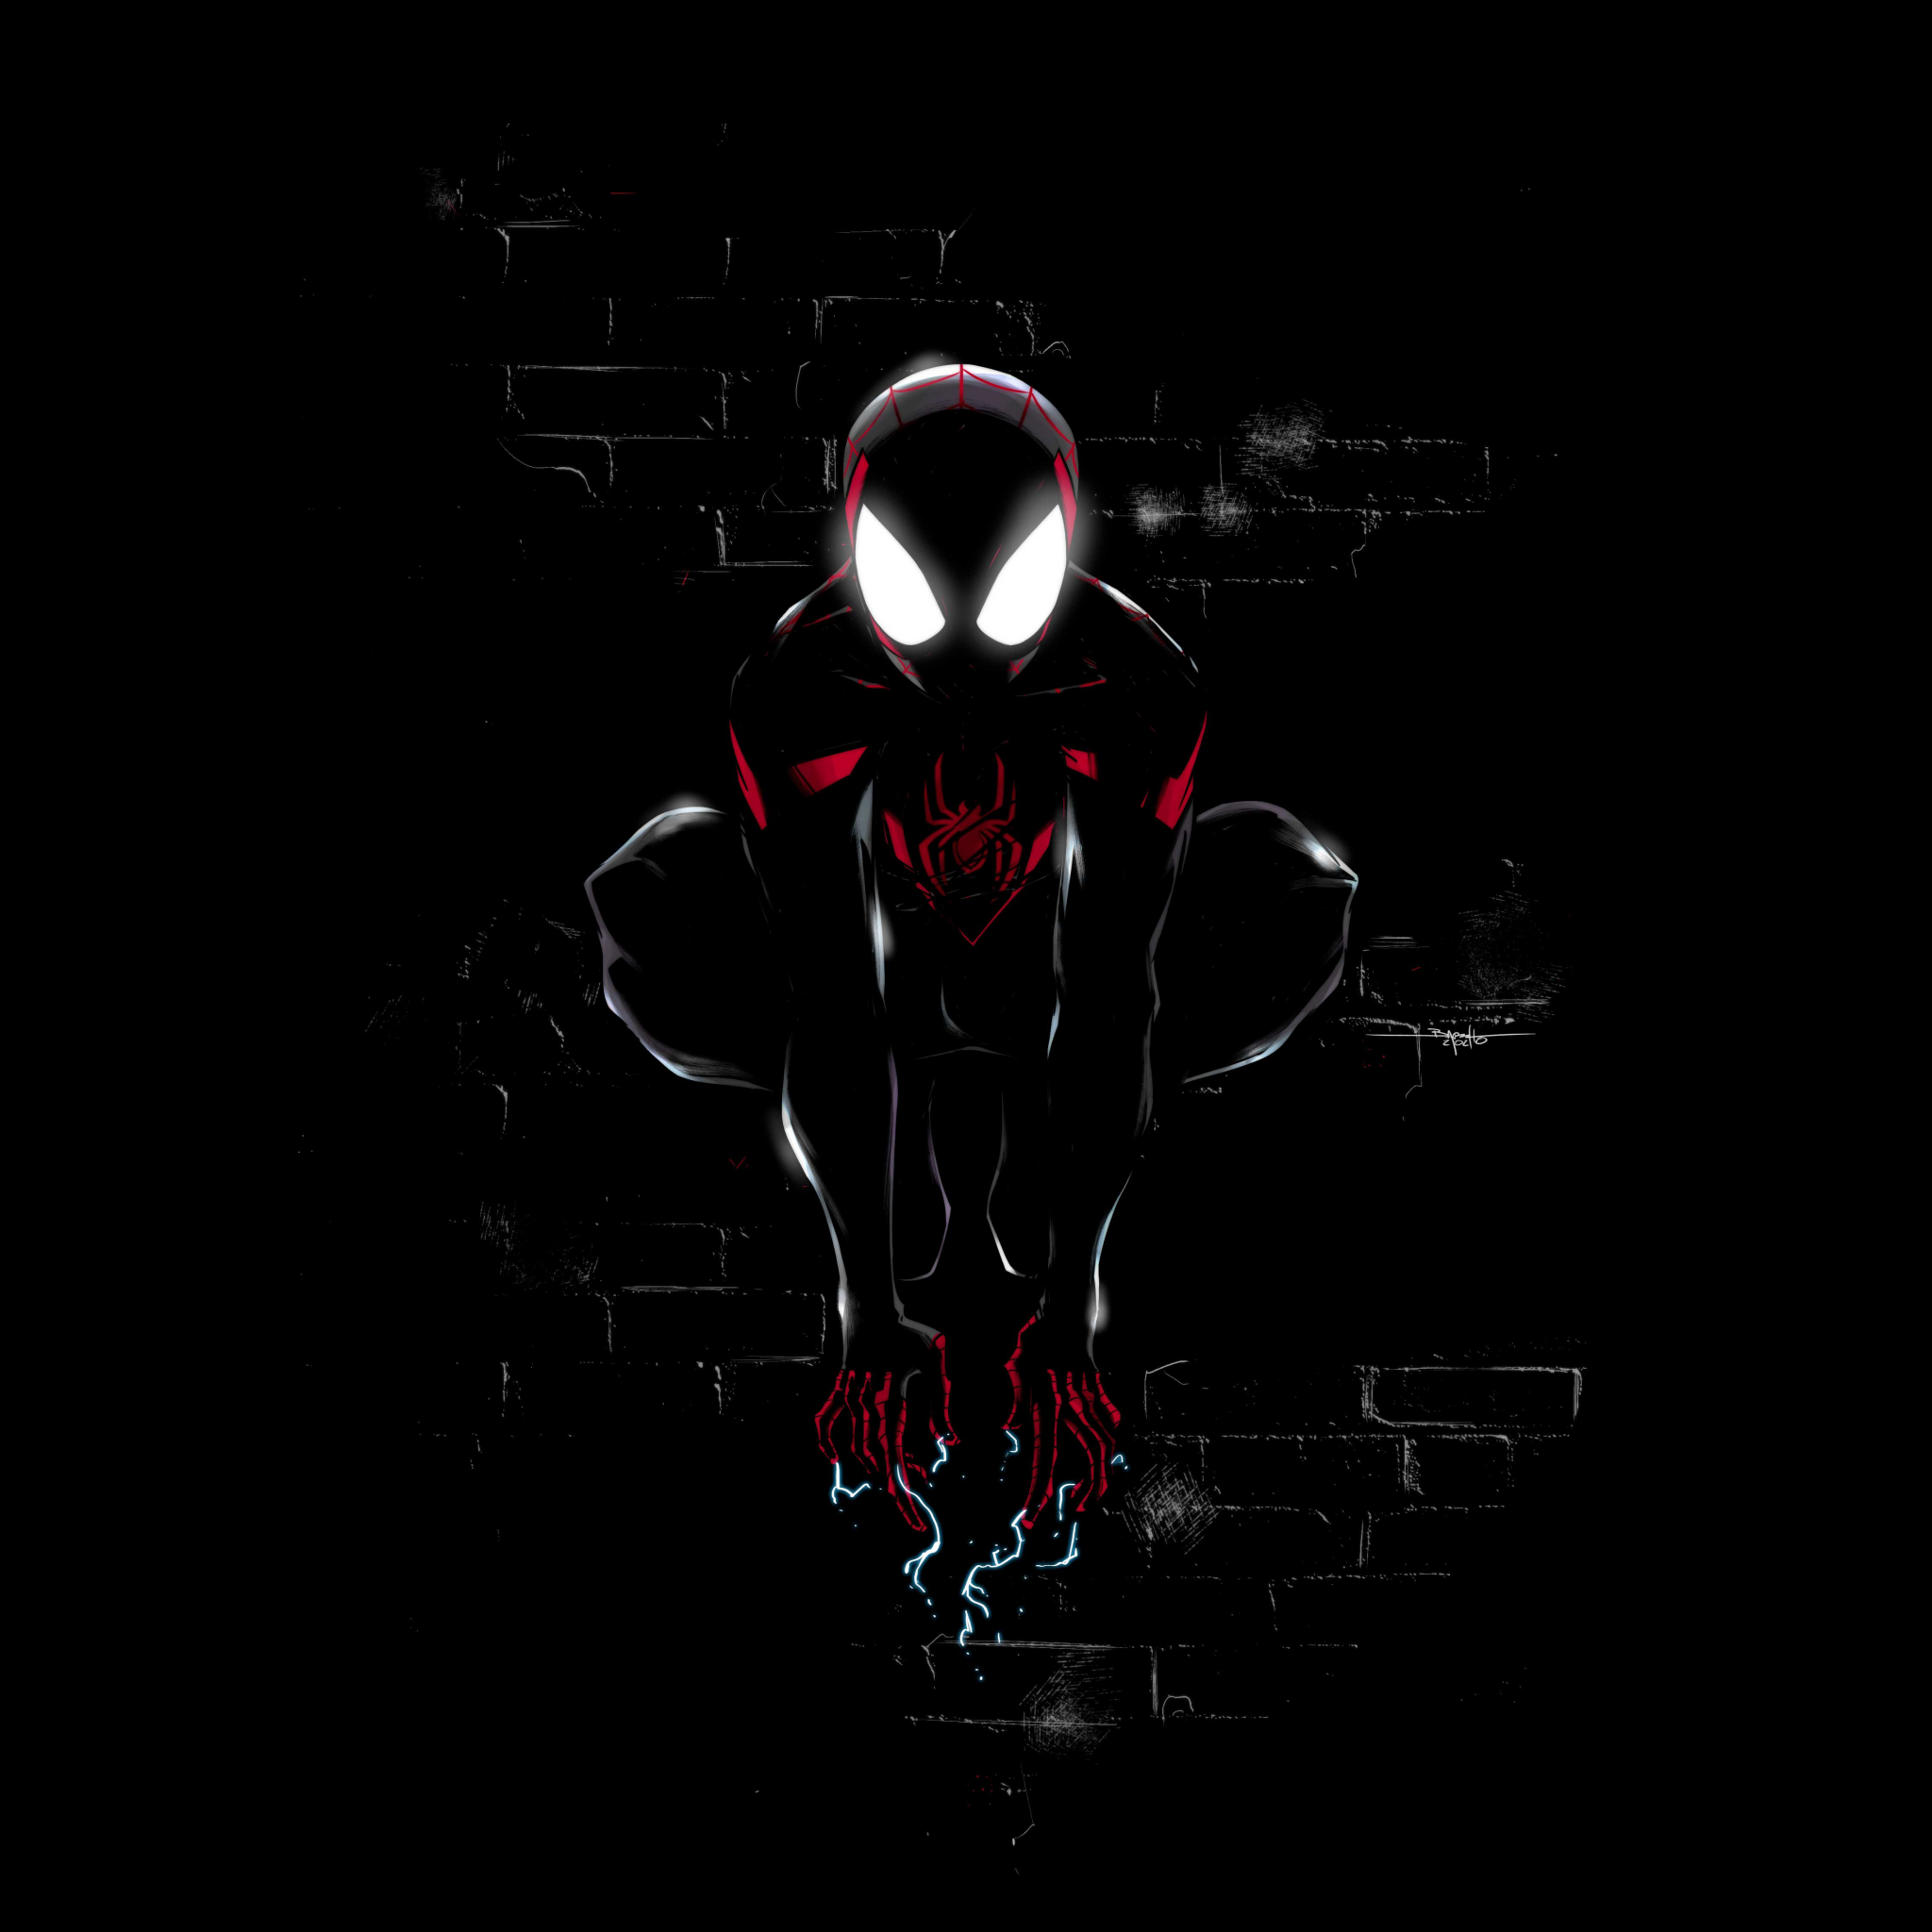 Hình nền Miles Morales 4K, Spider-Man, đen, đồ họa CGI, # 1902: Hãy thưởng thức tác phẩm đặc biệt này về nhân vật Spider-man trong bộ phim người thật đầy màu sắc. Hình ảnh đen lấp lánh và đồ họa CGI thực sự chân thật tạo ra một trải nghiệm sống động cho khán giả. Bạn sẽ không muốn bỏ lỡ hình nền 4K đẹp mắt này.